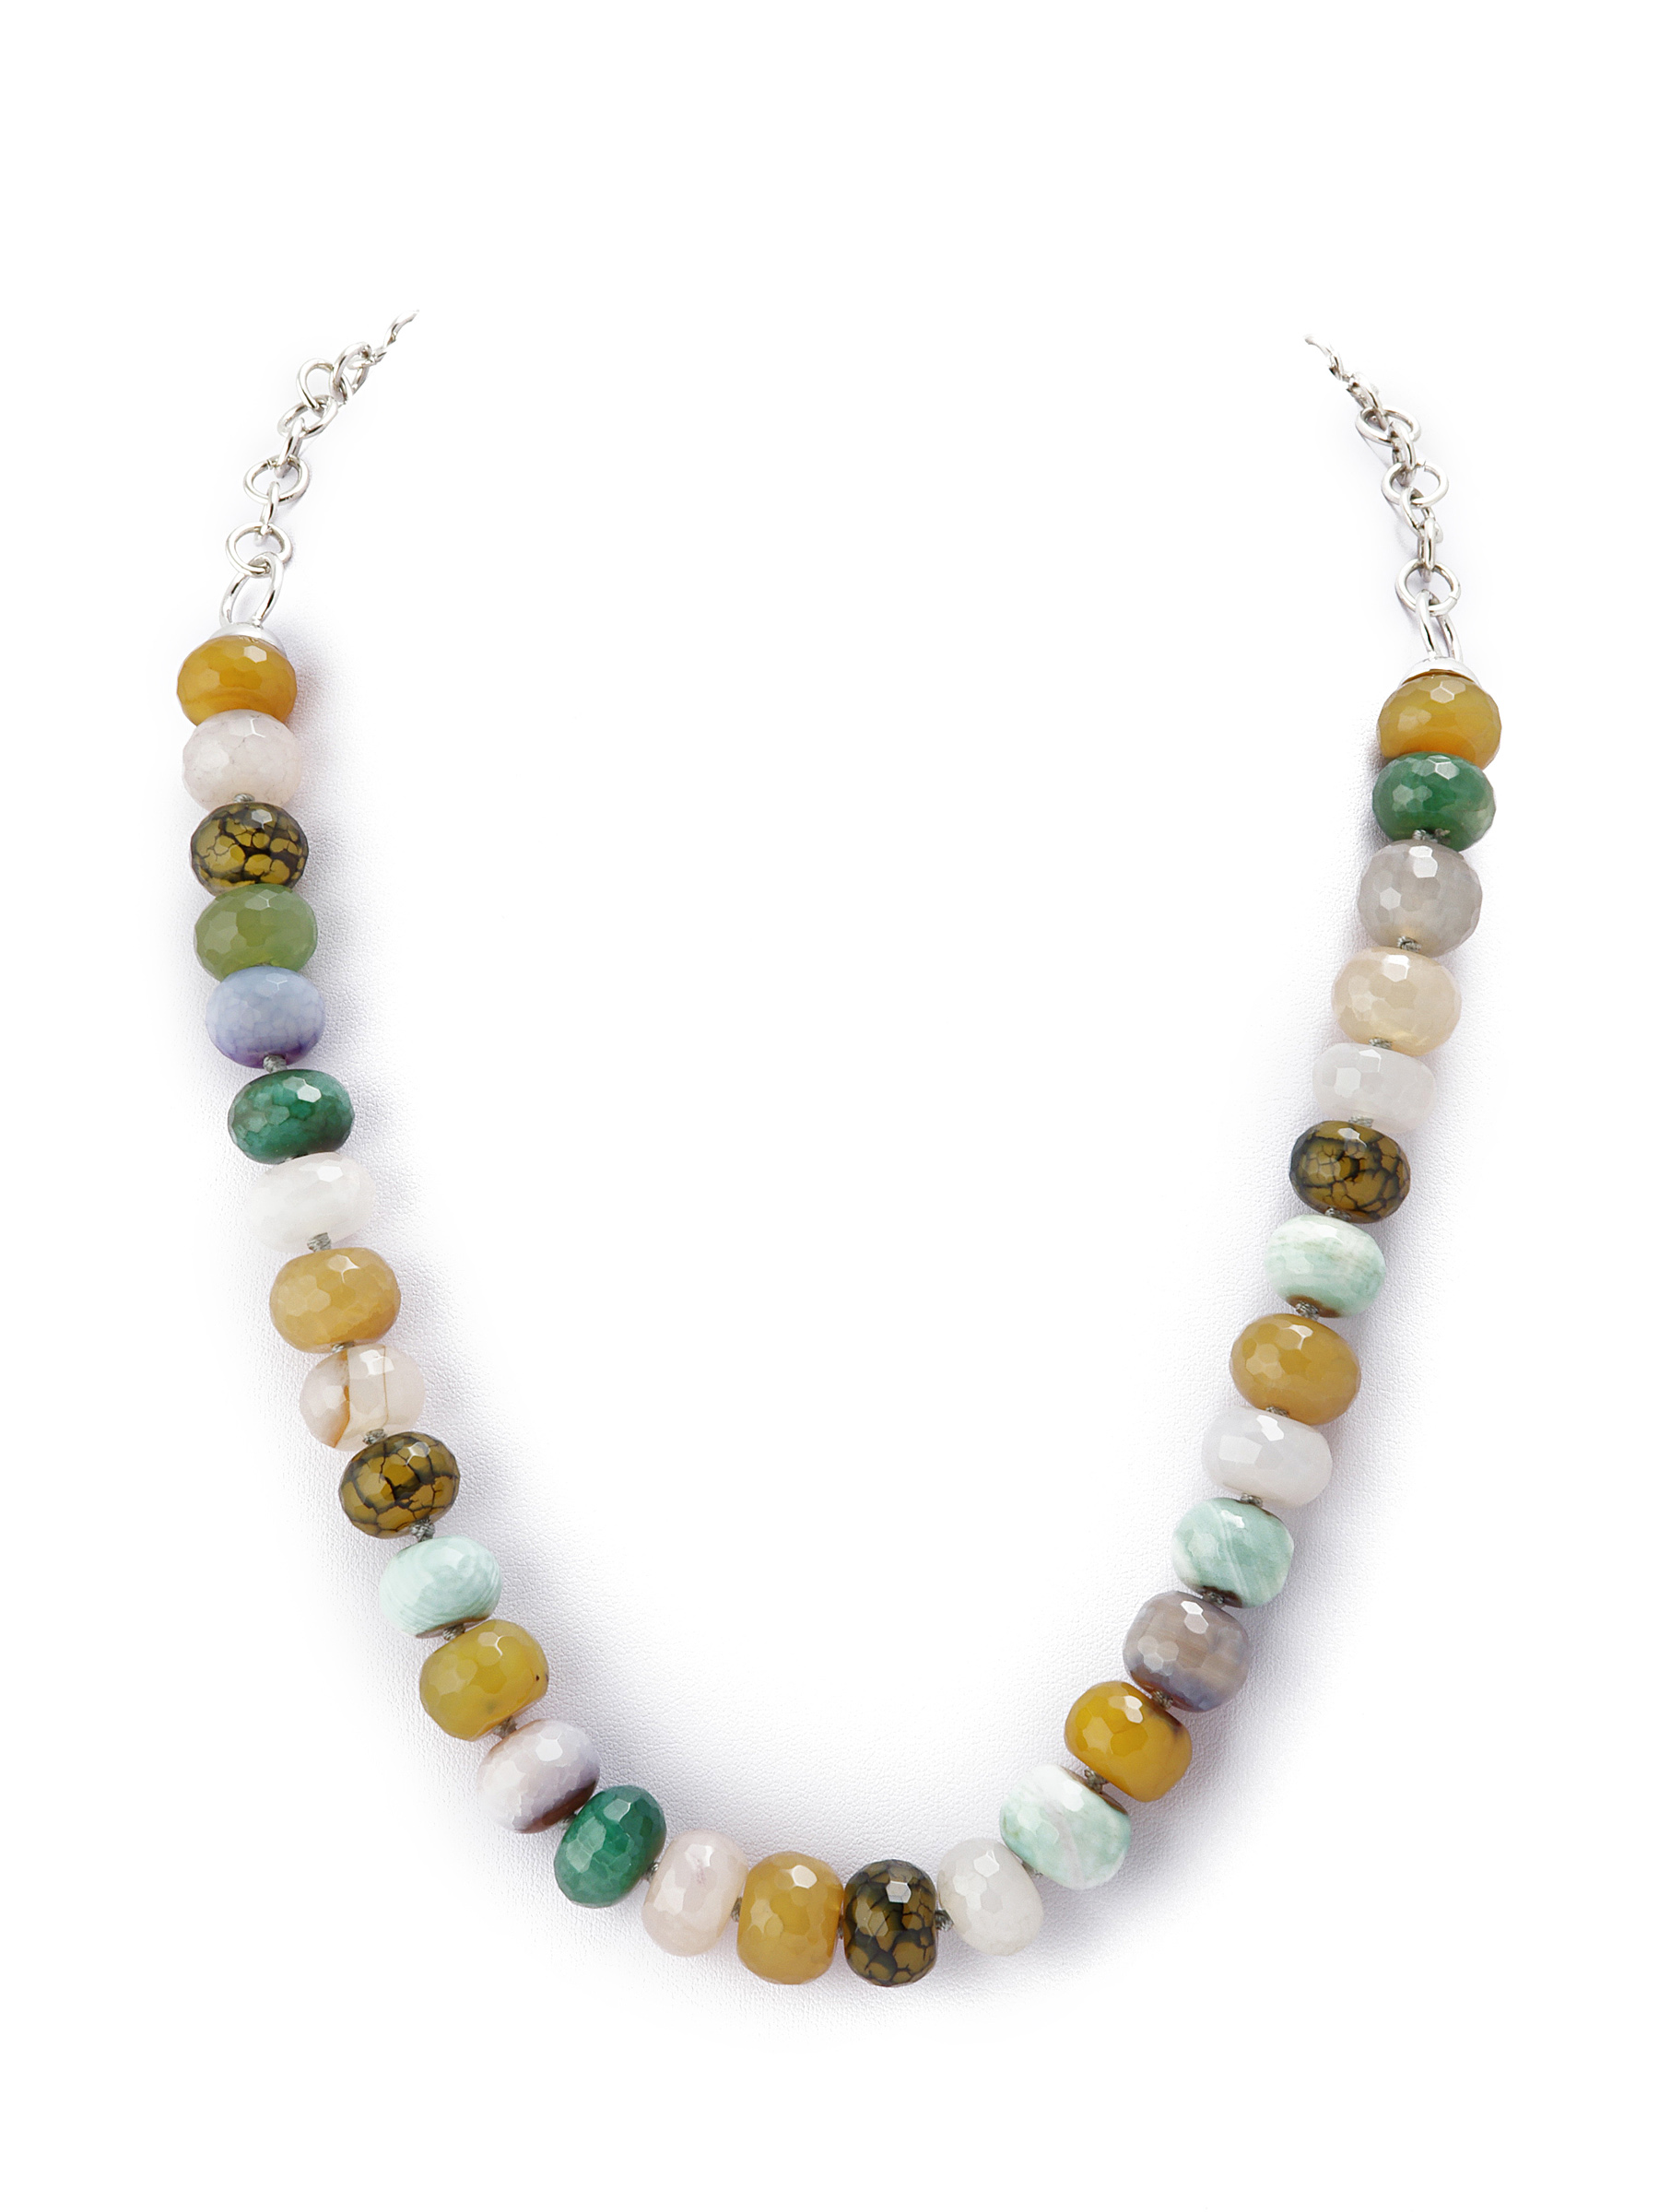 фото Колье/ожерелье бижутерное ЖемАрт с126-211, Агат, Бижутерный сплав, горчичный, зеленый